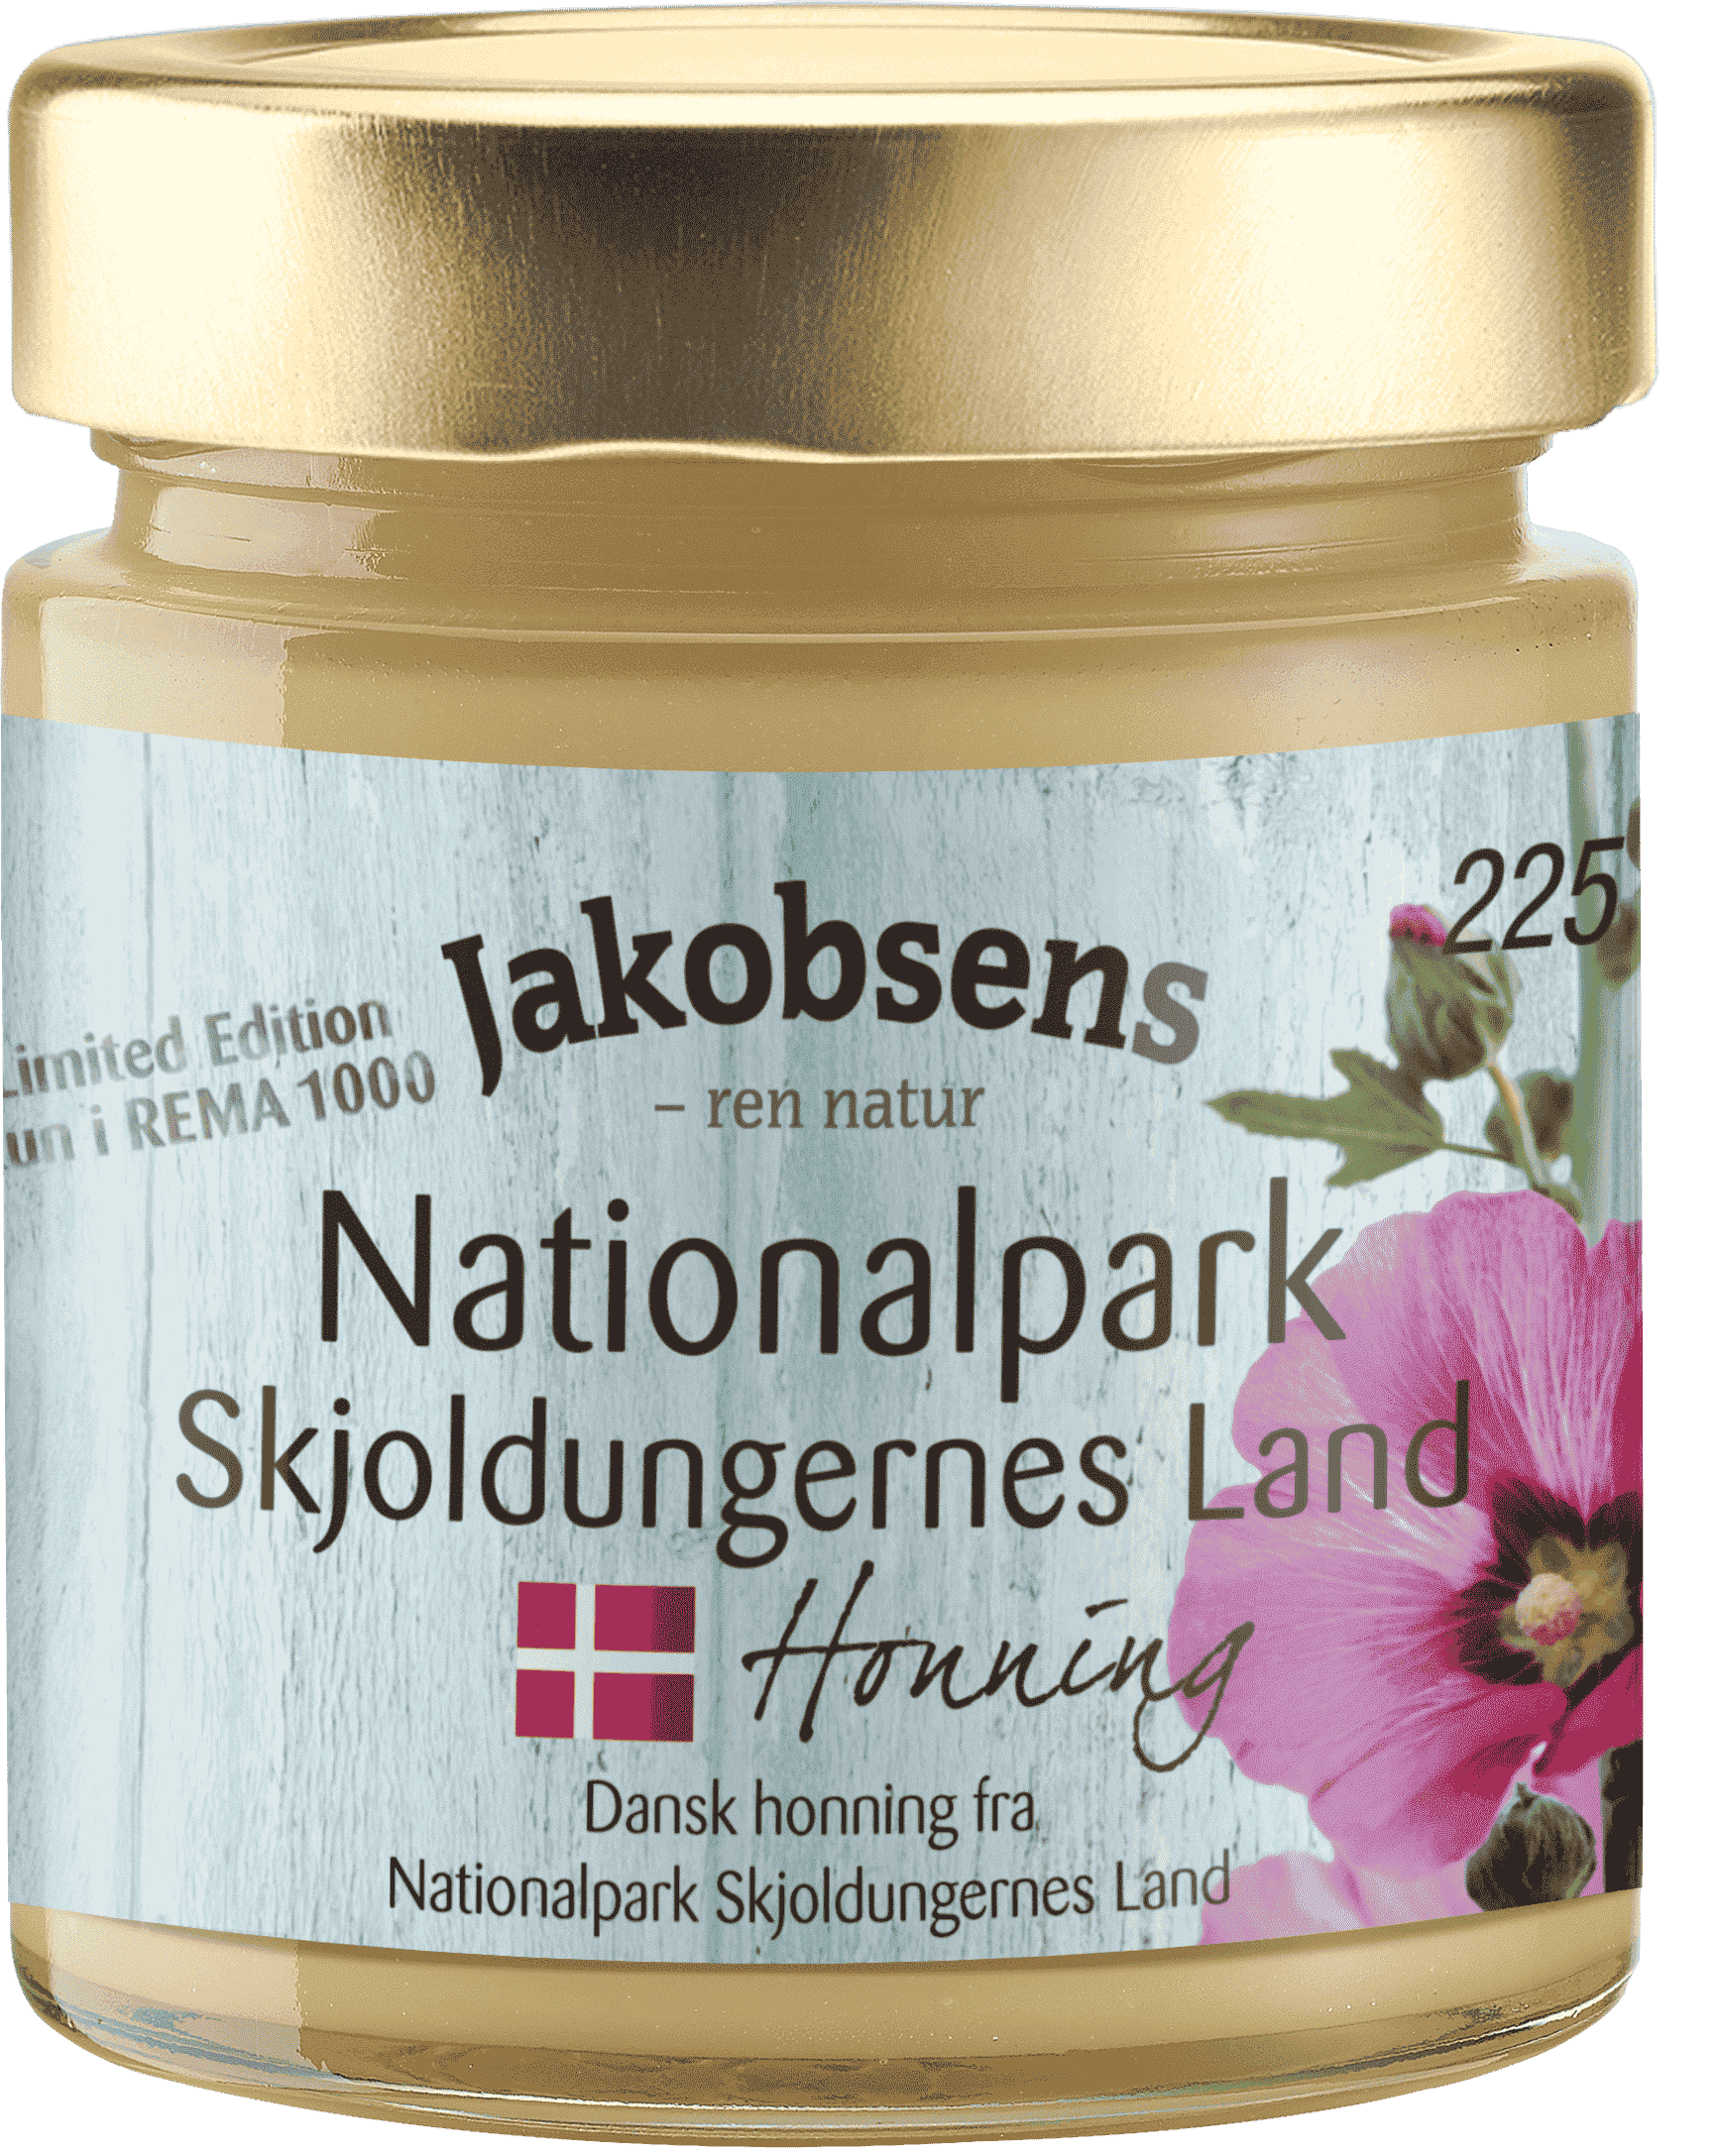 Jakobsens Dansk Egnshonning – Nationalpark Skjoldungernes Land